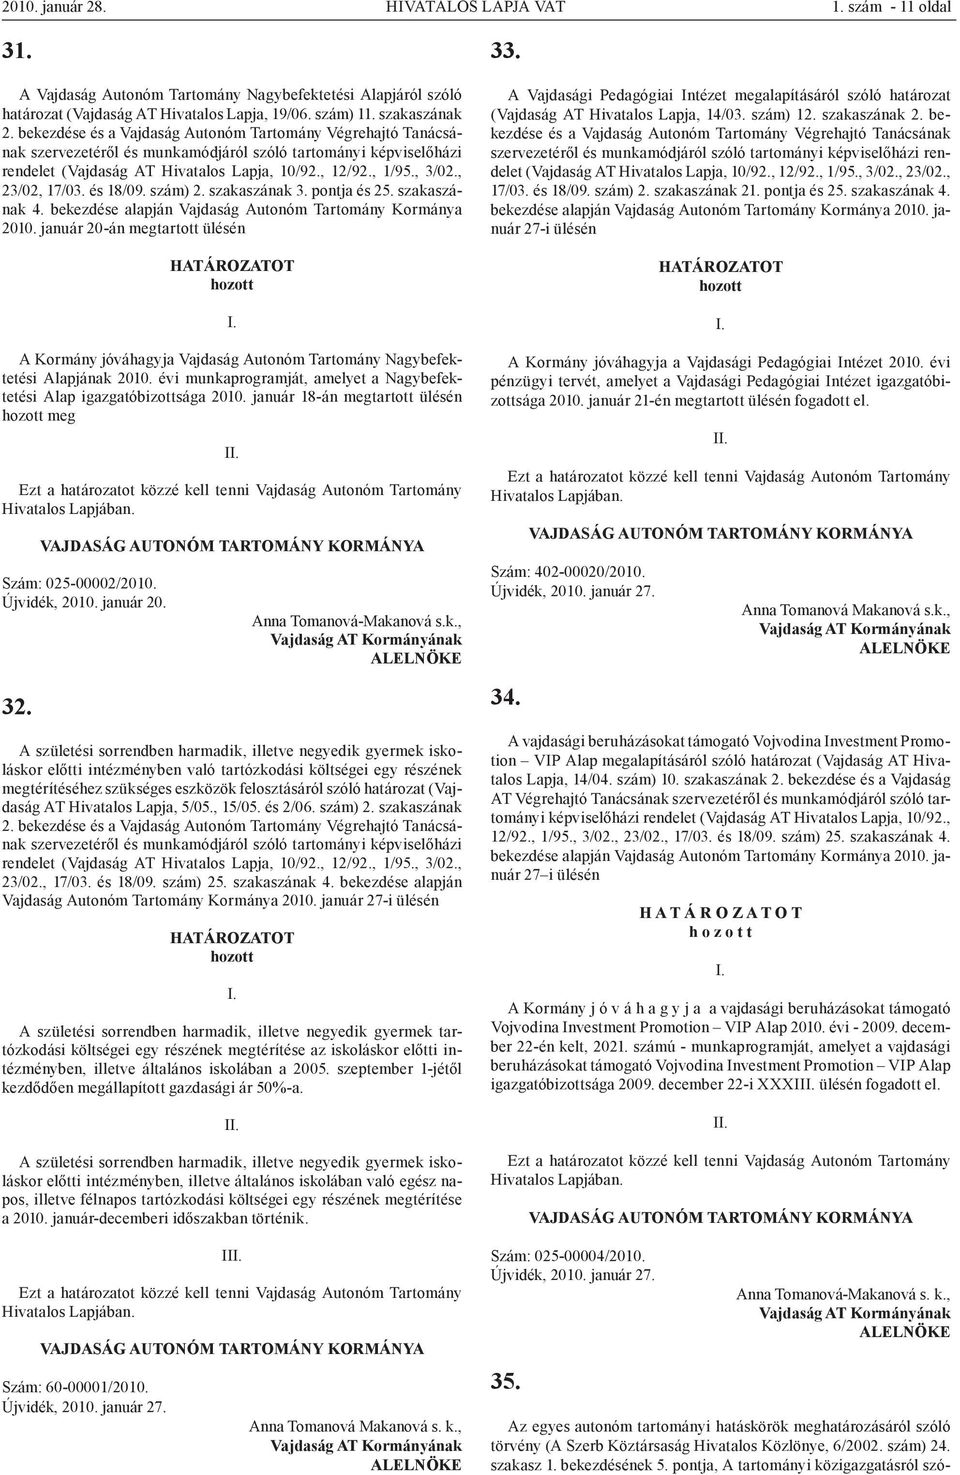 , 23/02, 17/03. és 18/09. szám) 2. szakaszának 3. pontja és 25. szakaszának 4. bekezdése alapján Vajdaság Autonóm Tartomány Kormánya 2010.